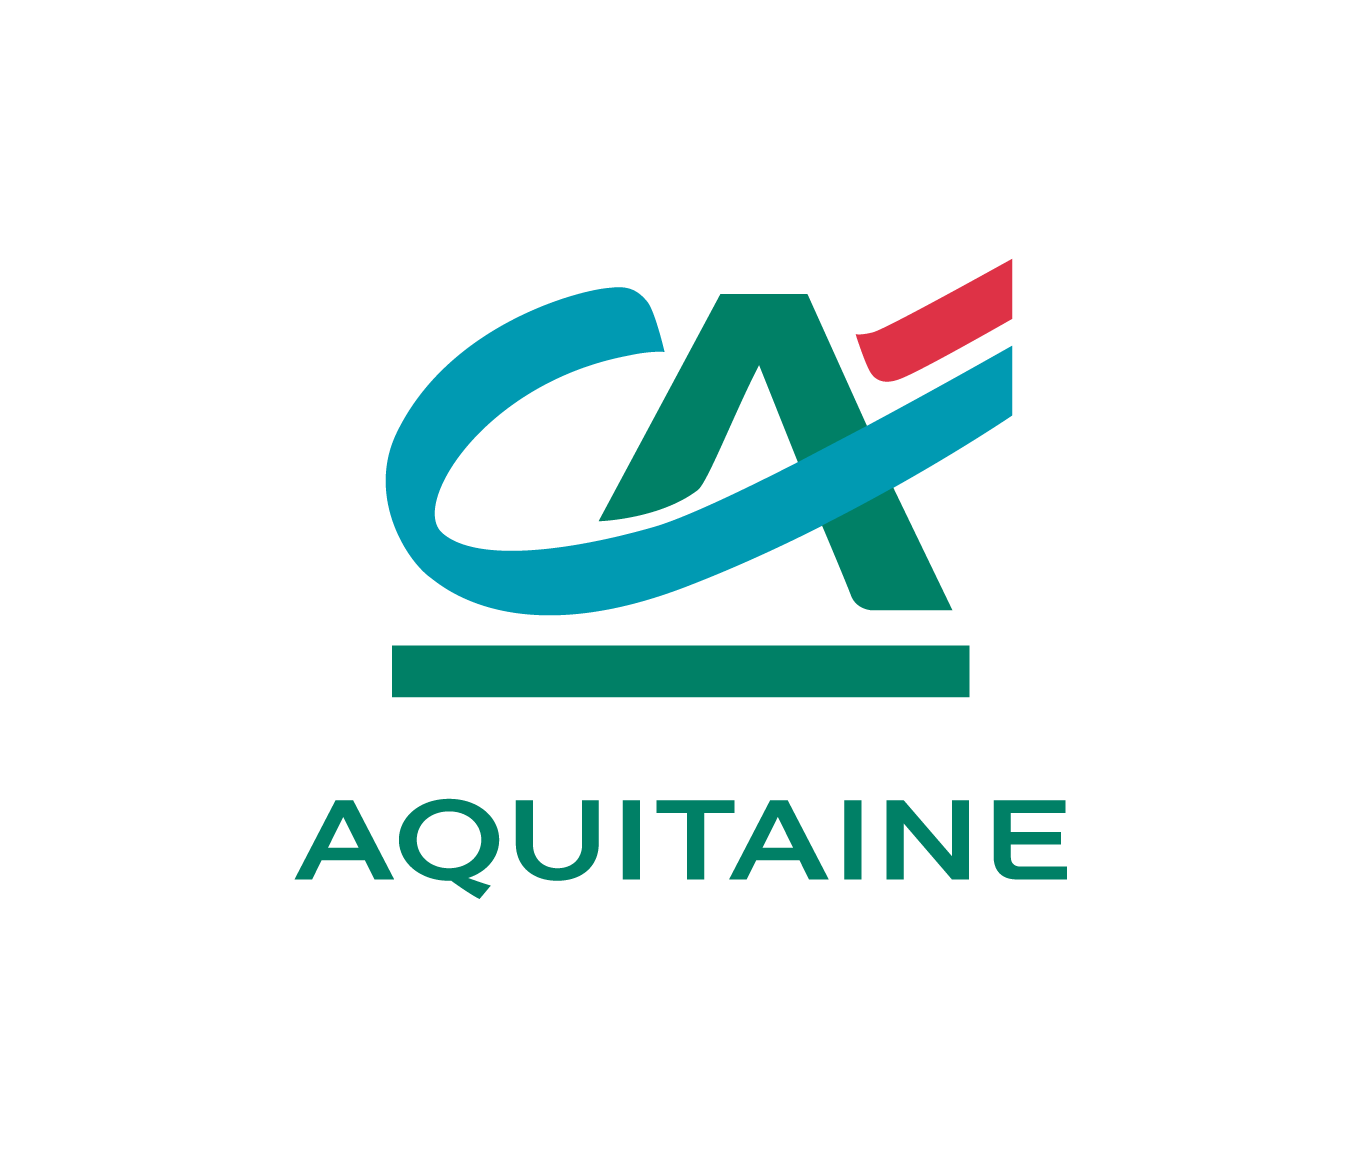 CA-Aquitaine